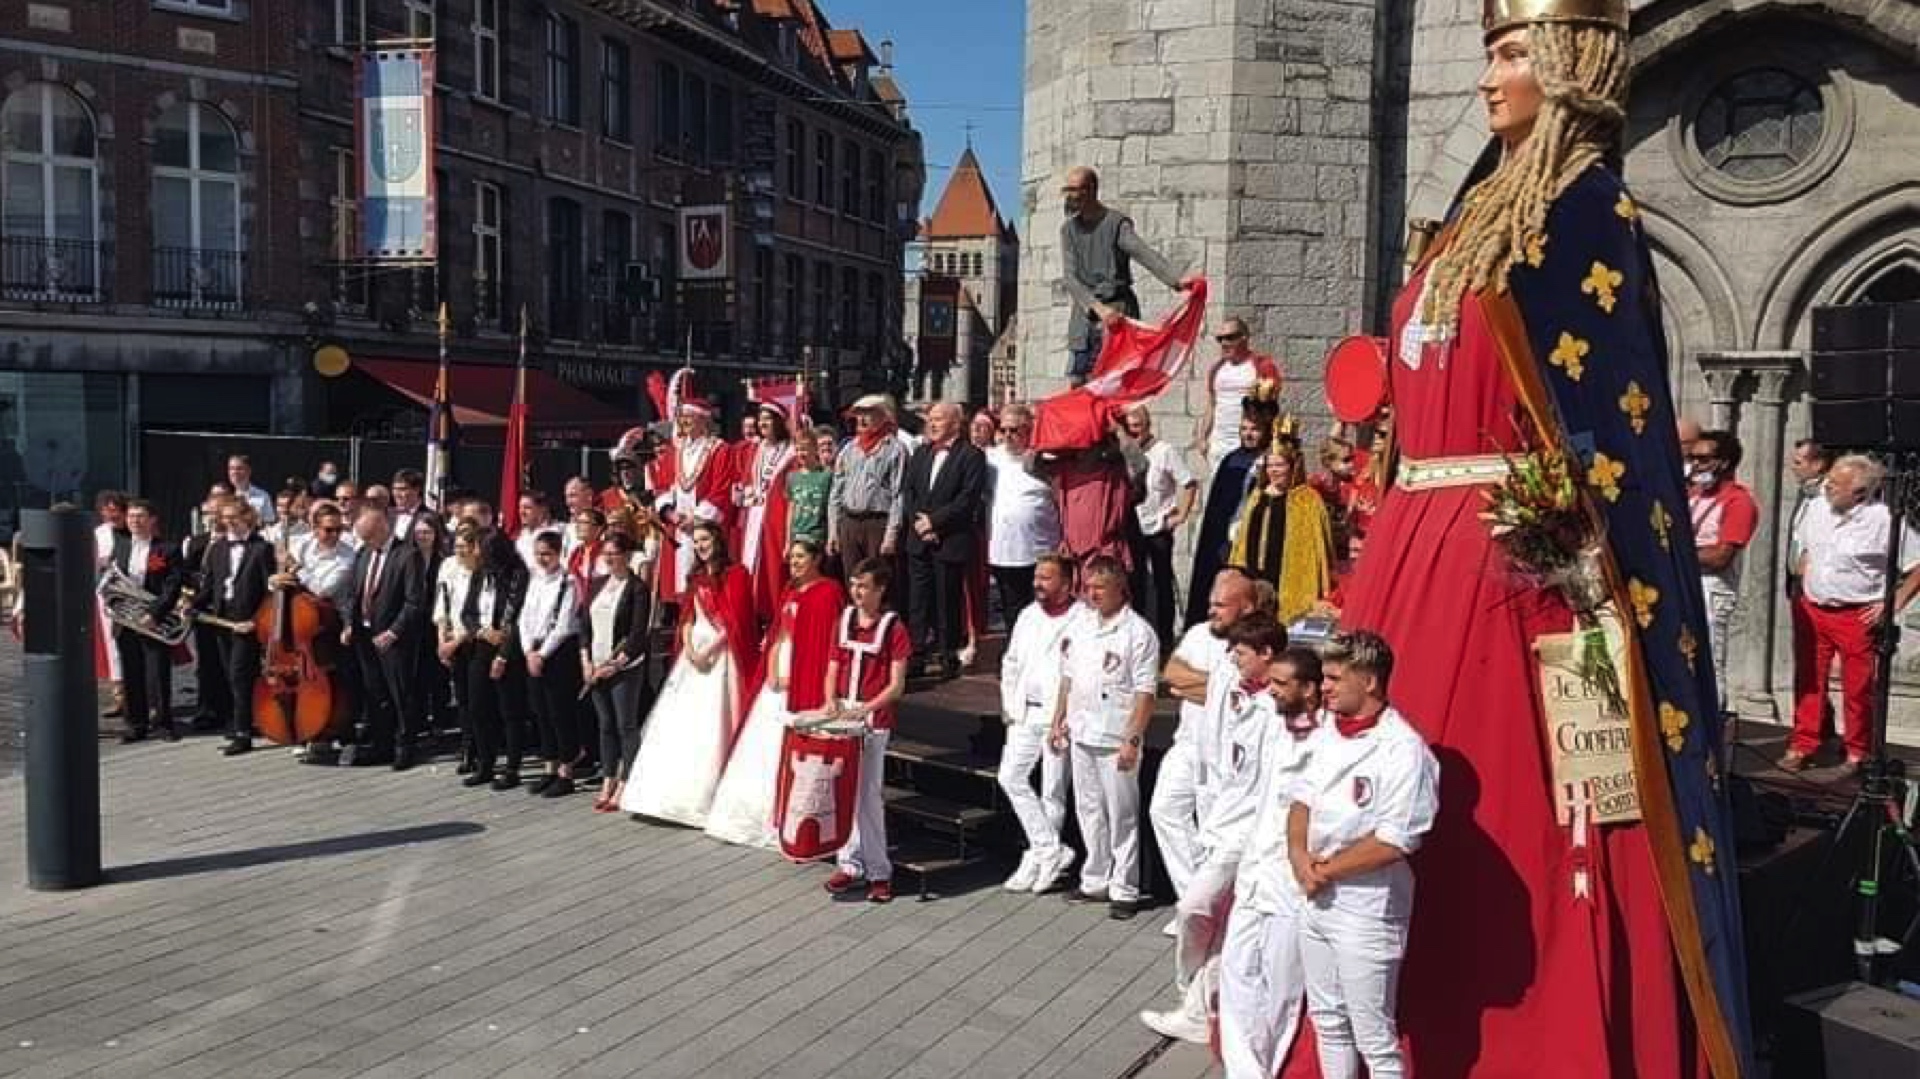 Les Amis de Tournai face à la controverse suite à la publication d'une photo sur les réseaux sociaux